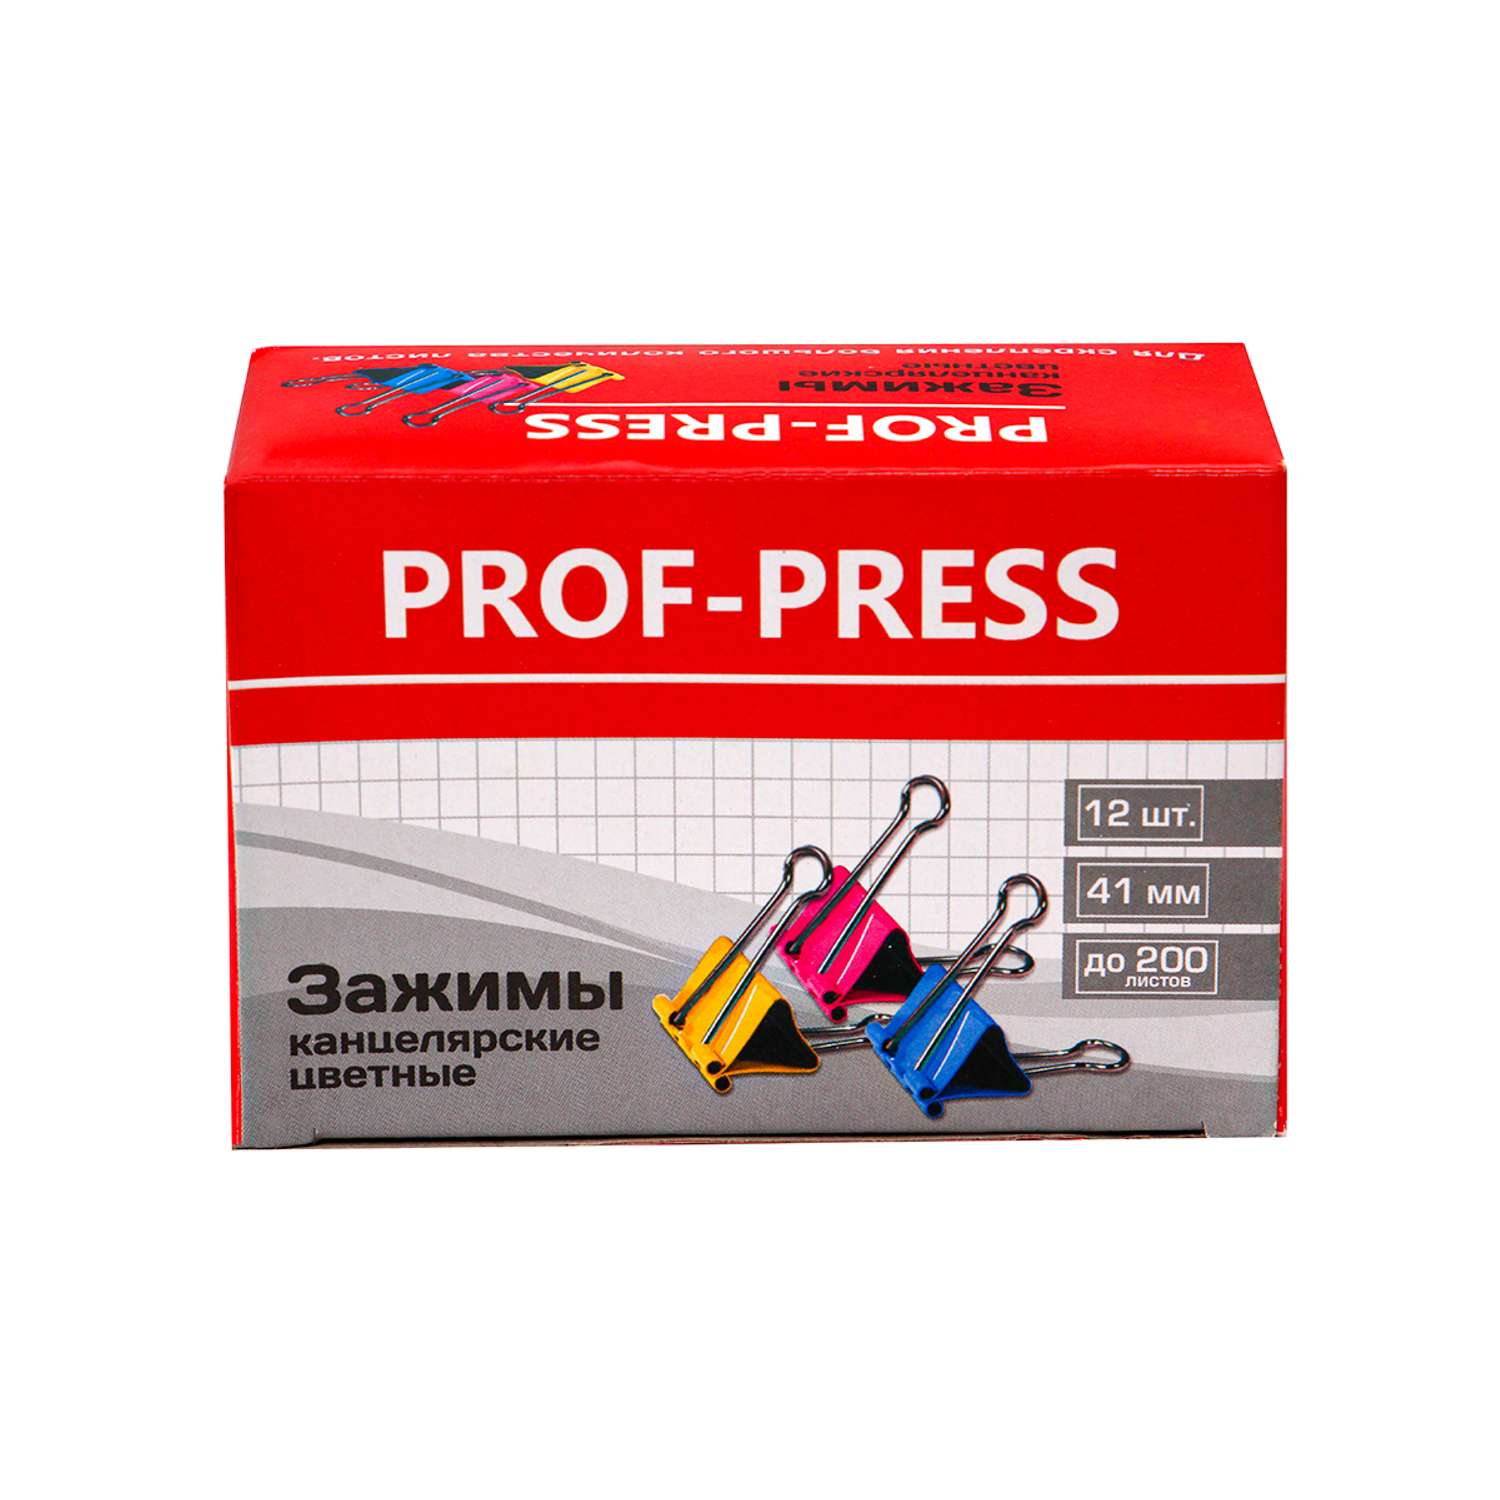 Зажим для бумаг Prof-Press цветной 41мм 12 шт в коробке - фото 2